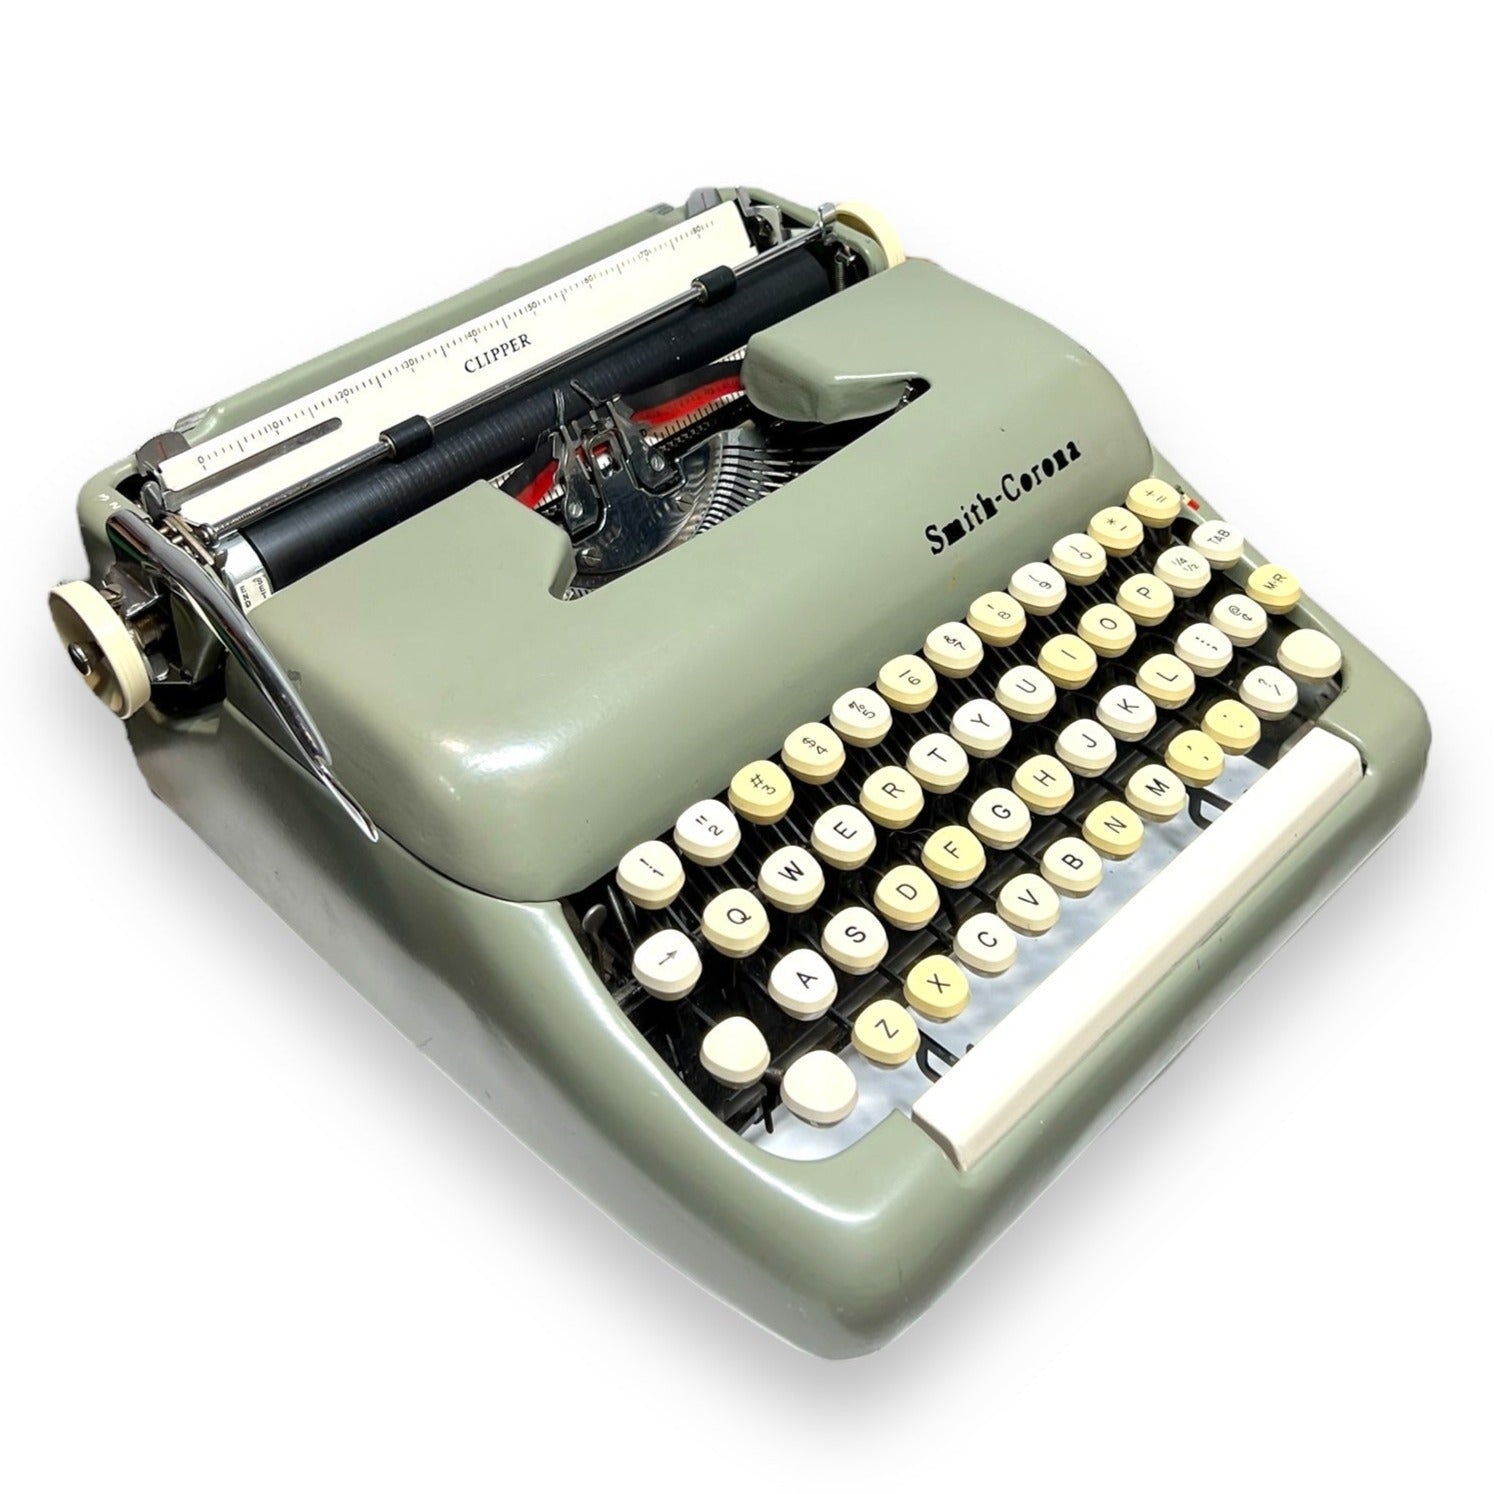 Toronto Typewriters Manual Typewriter Smith-Corona Clipper Typewriter